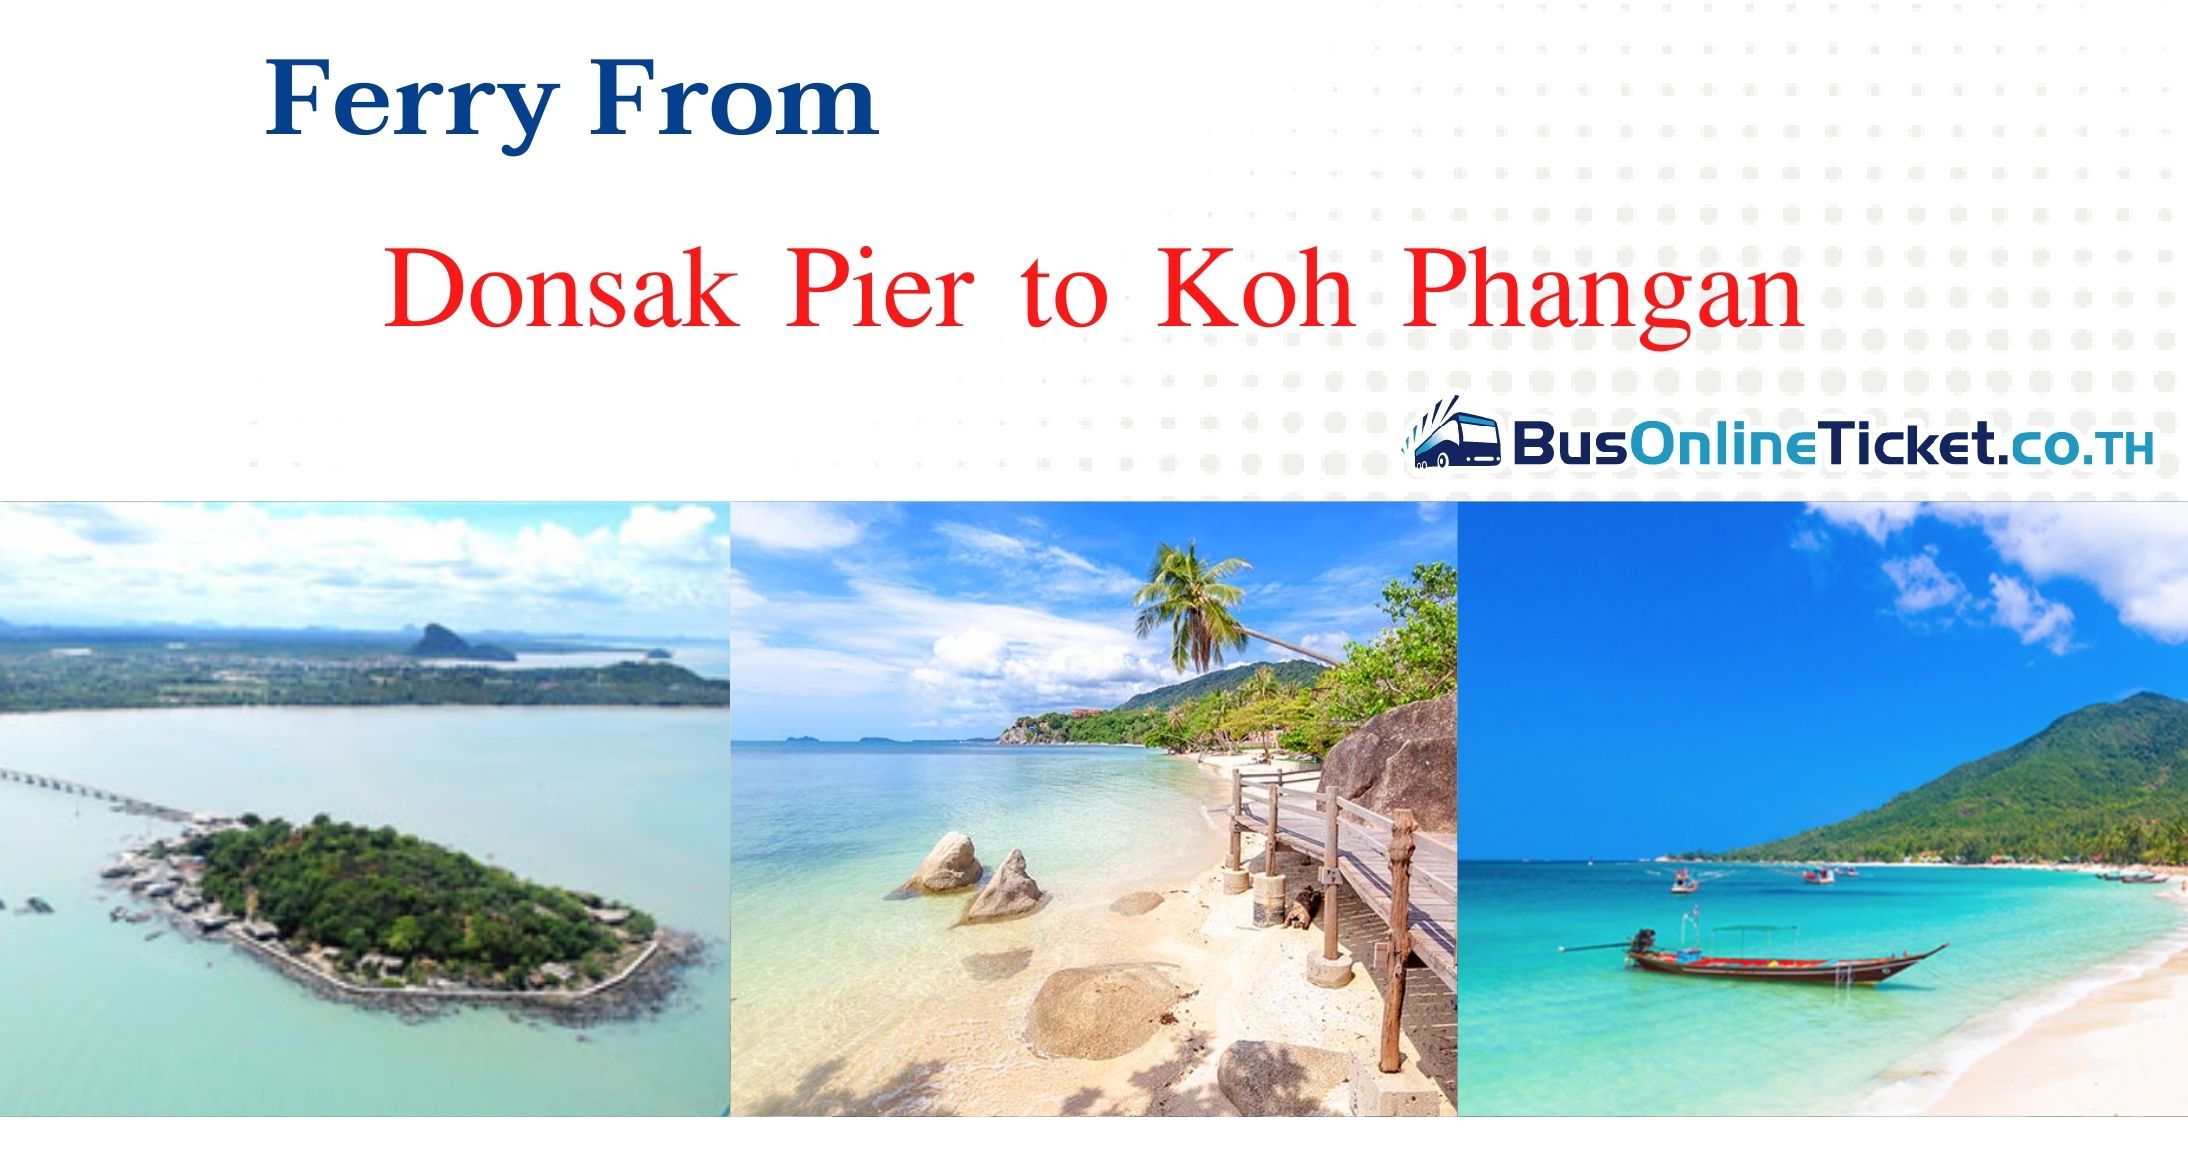 Donsak Pier to Koh Phangan